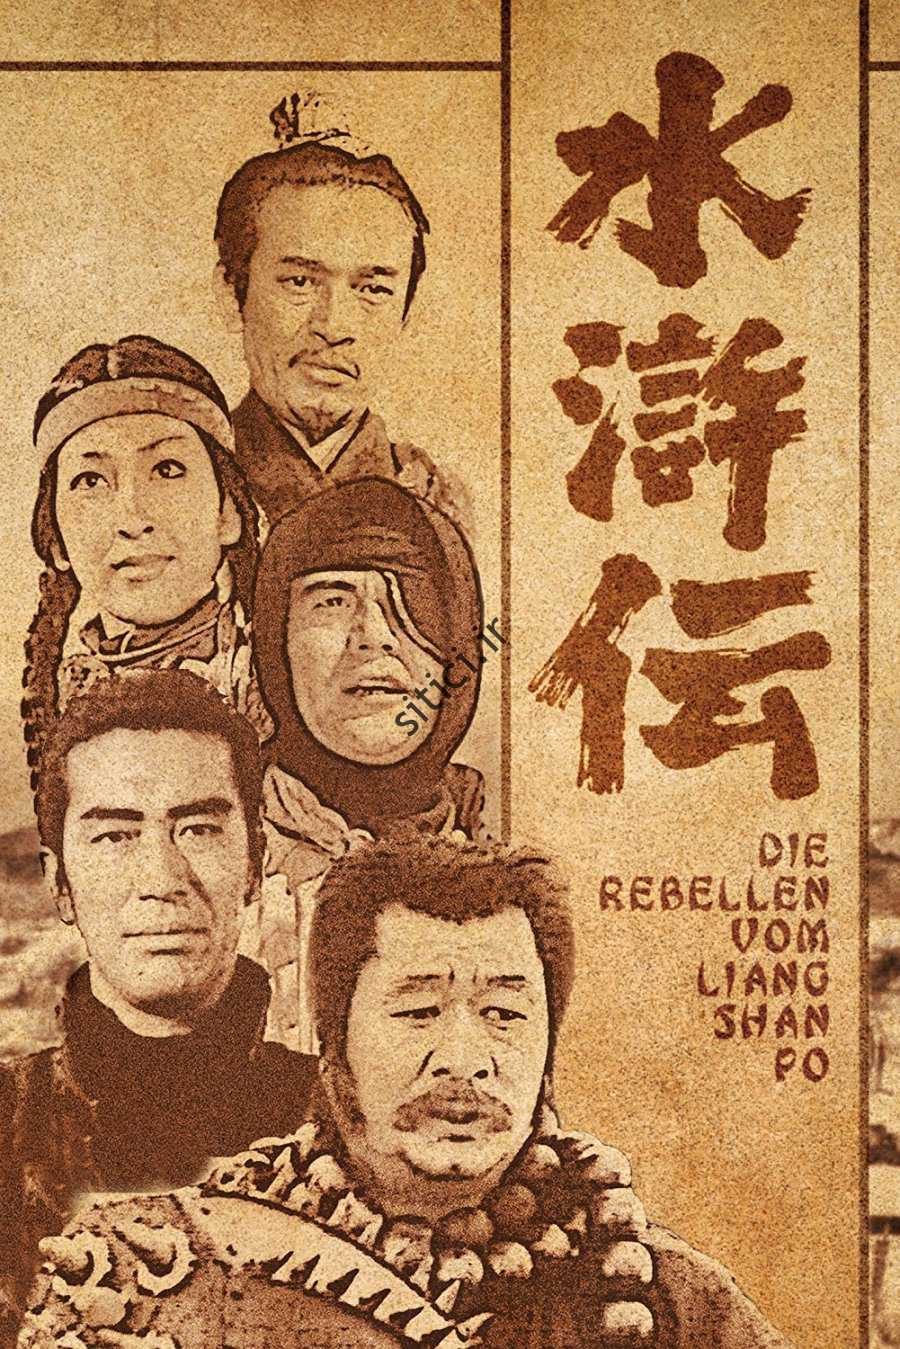 سریال ژاپنی The Mountain Warriors در اصل بر اساس یک افسانه معروف چینی به نام The Water Margin ساخته شد.